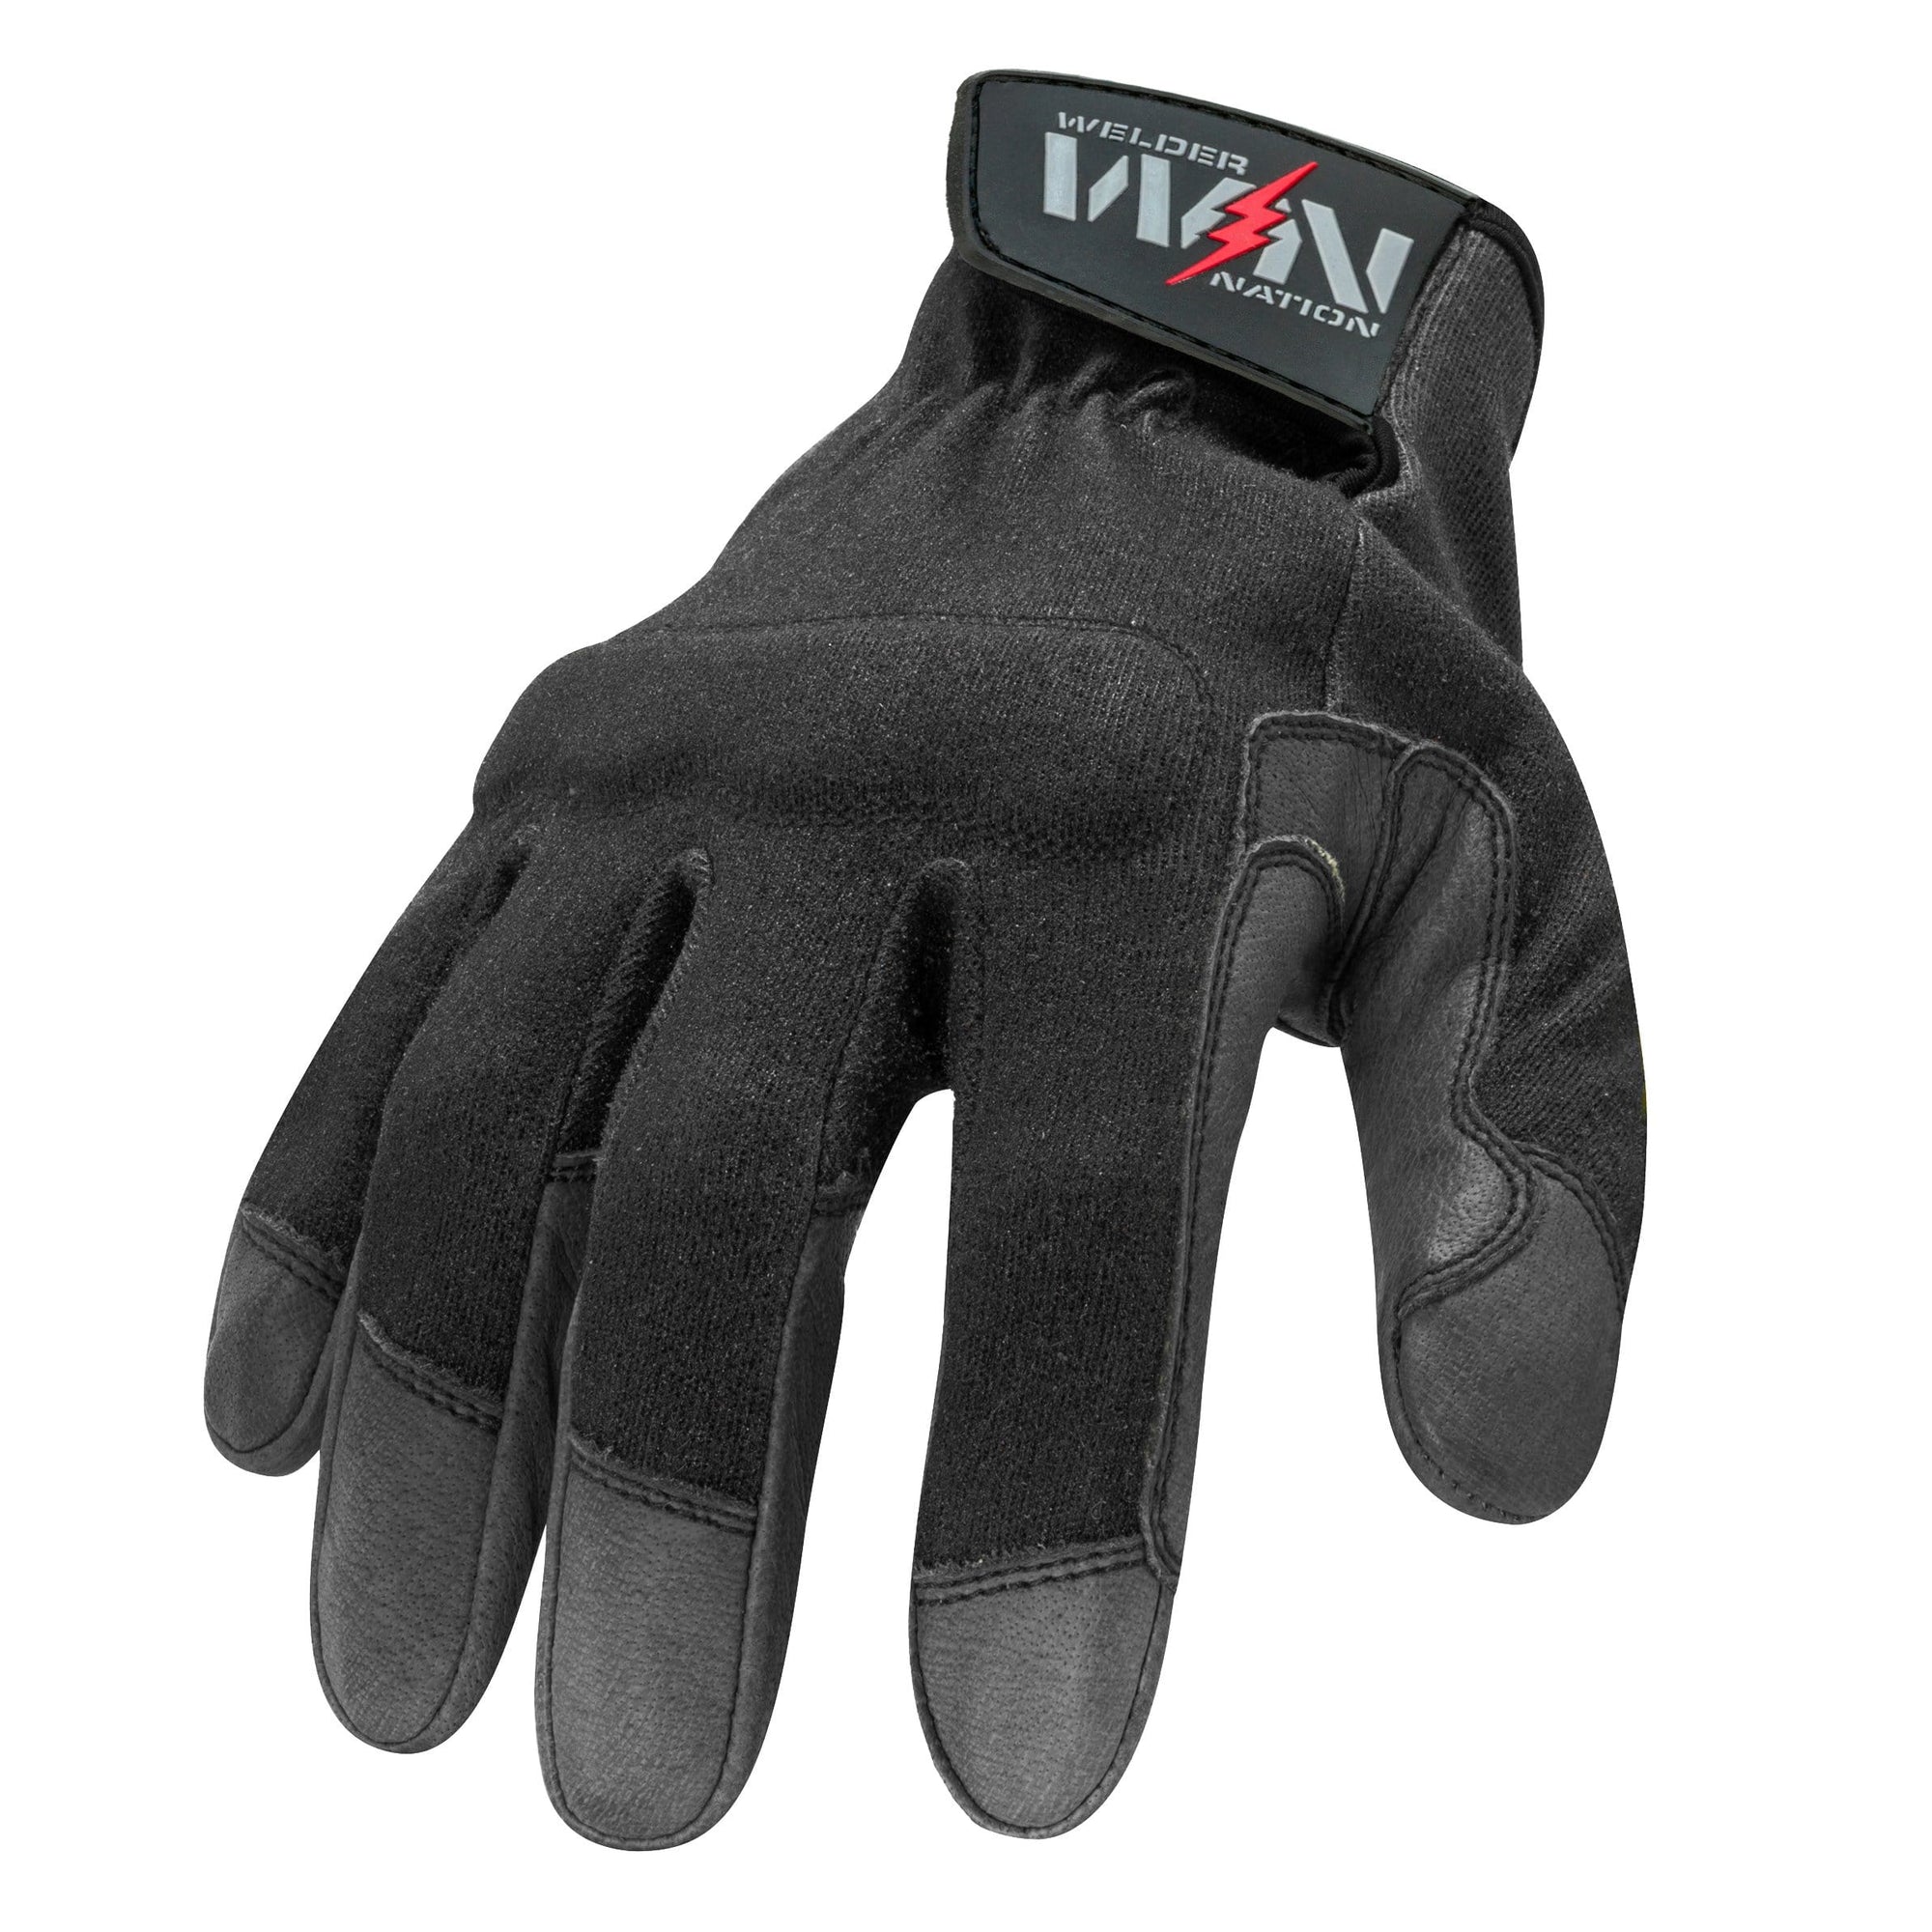 FR Fabricator Cut 2 Welding Gloves